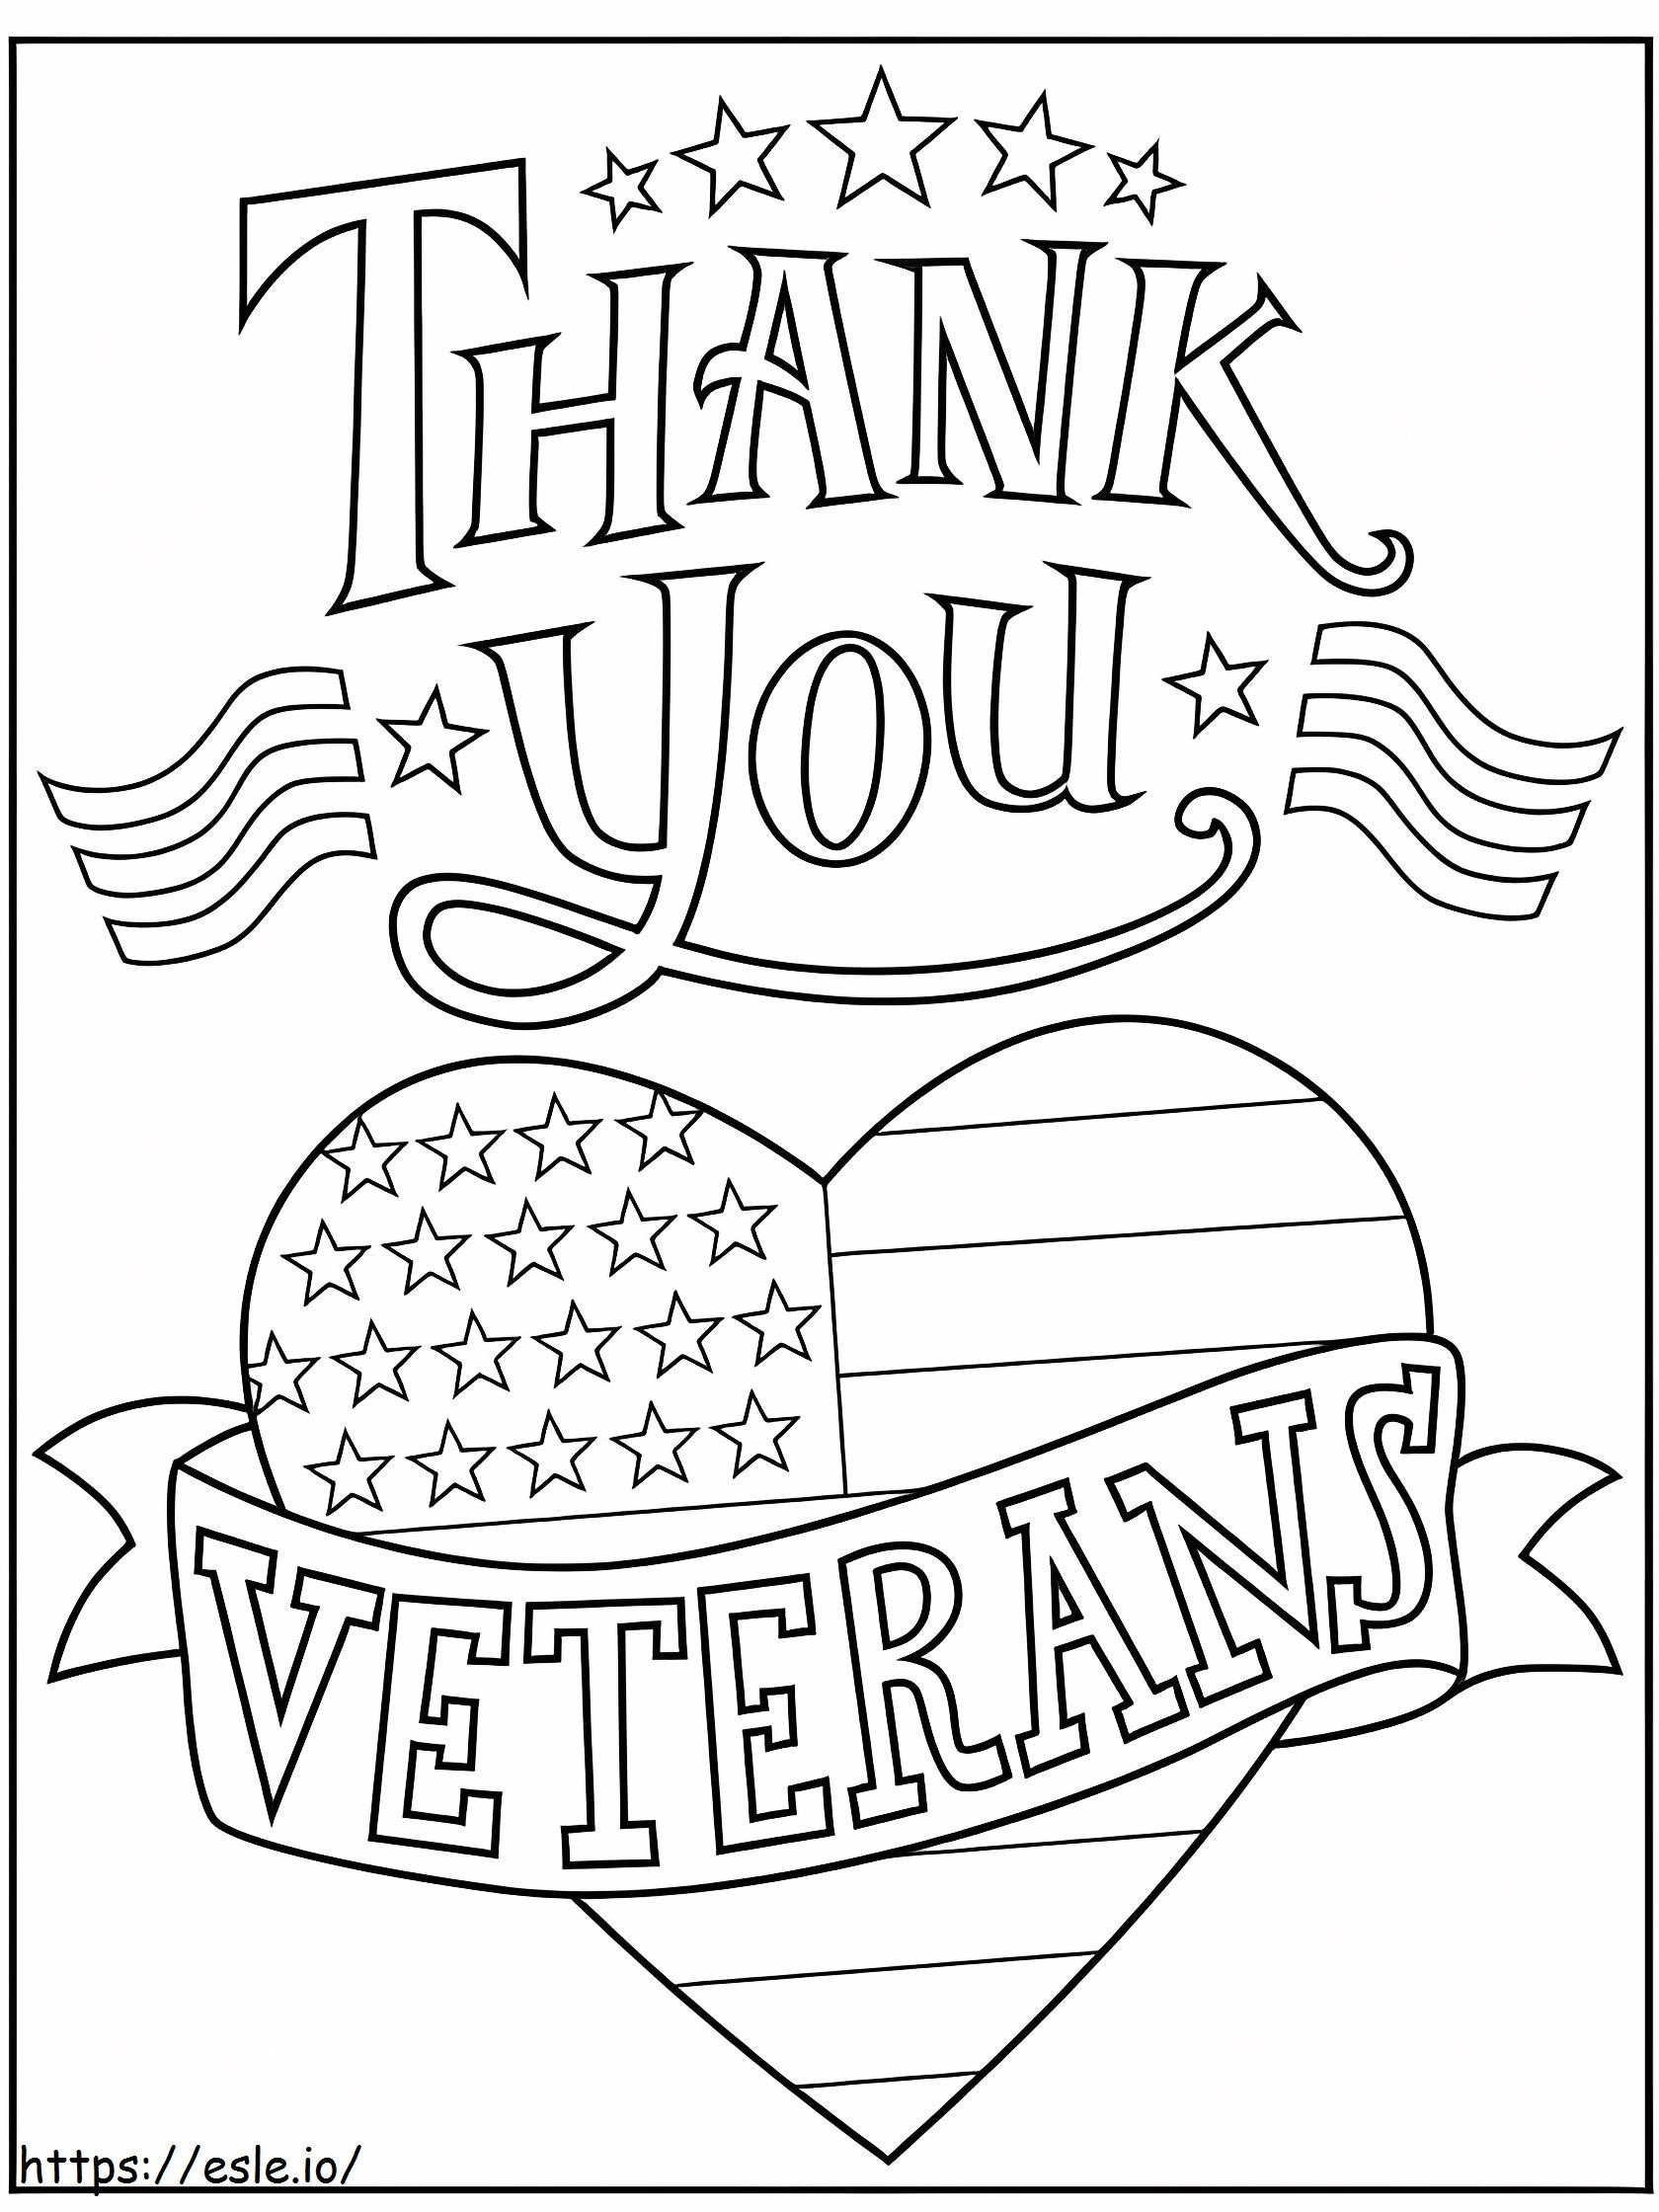 Bedankt Veteranen 1 kleurplaat kleurplaat